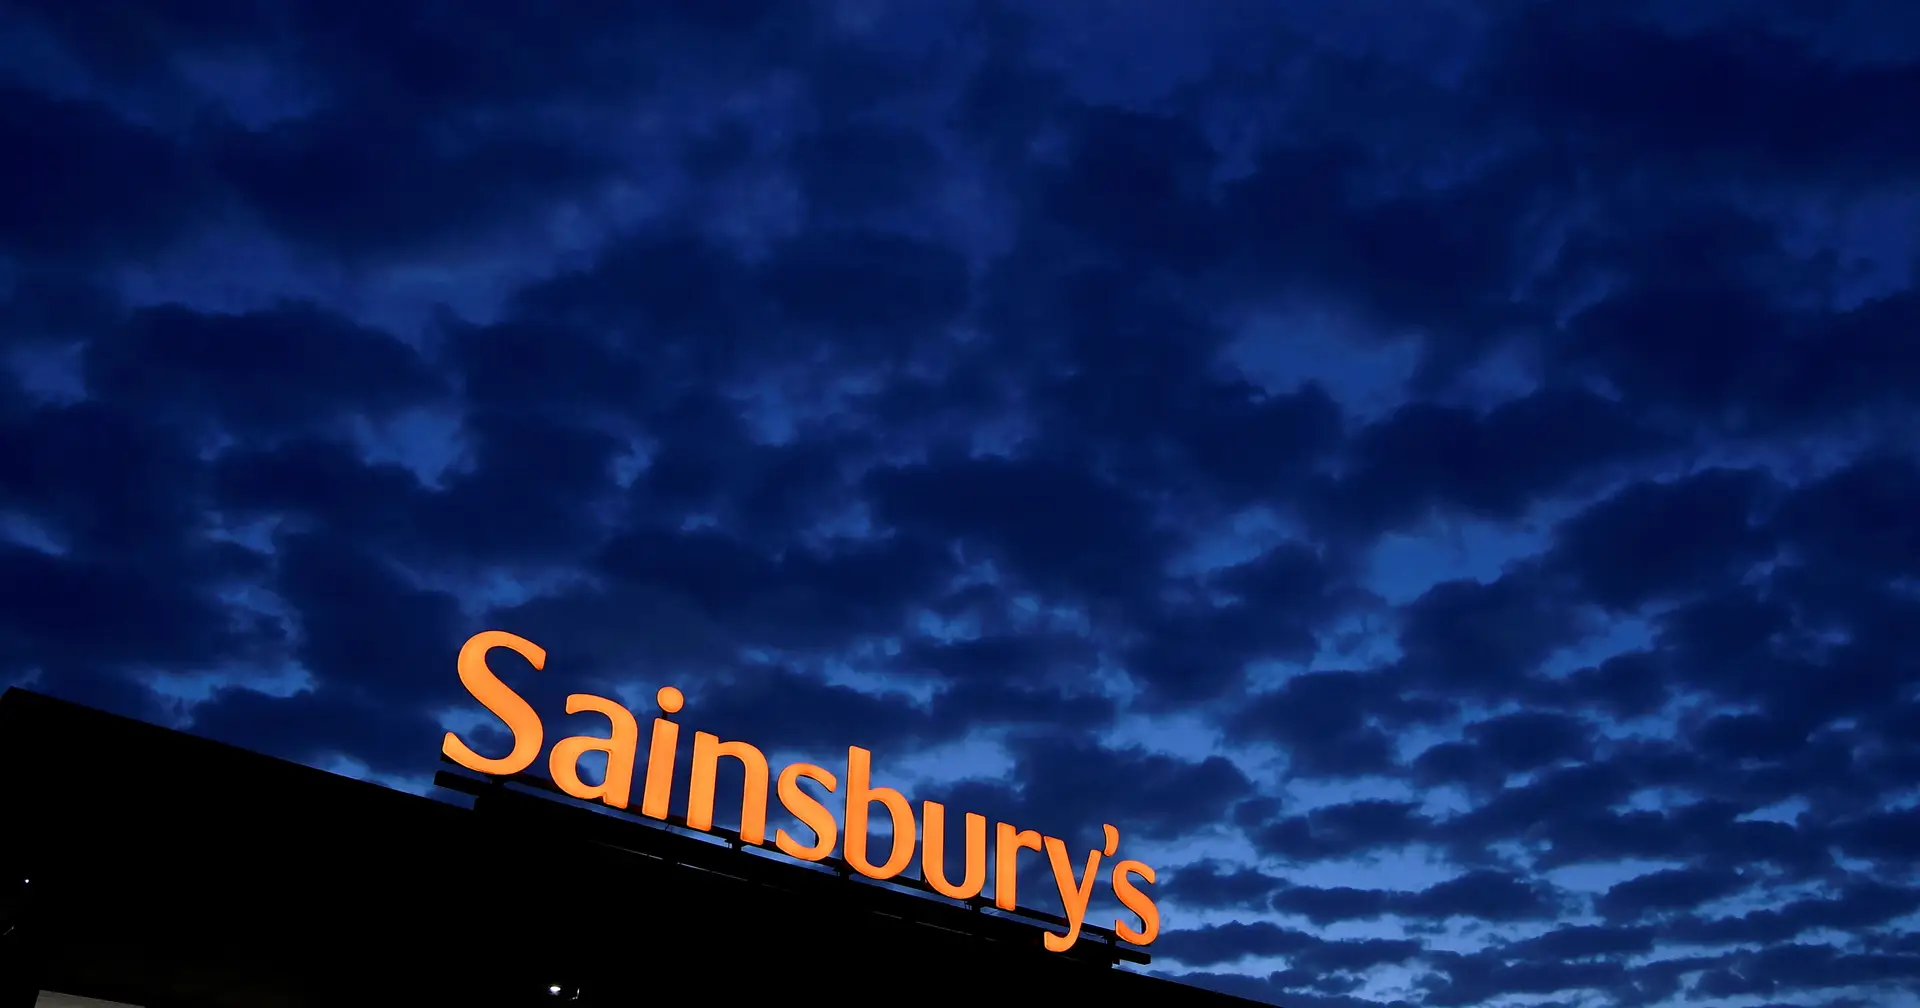 Autista processa a cadeia Sainsbury's por não deixar entrar no supermercado a sua 